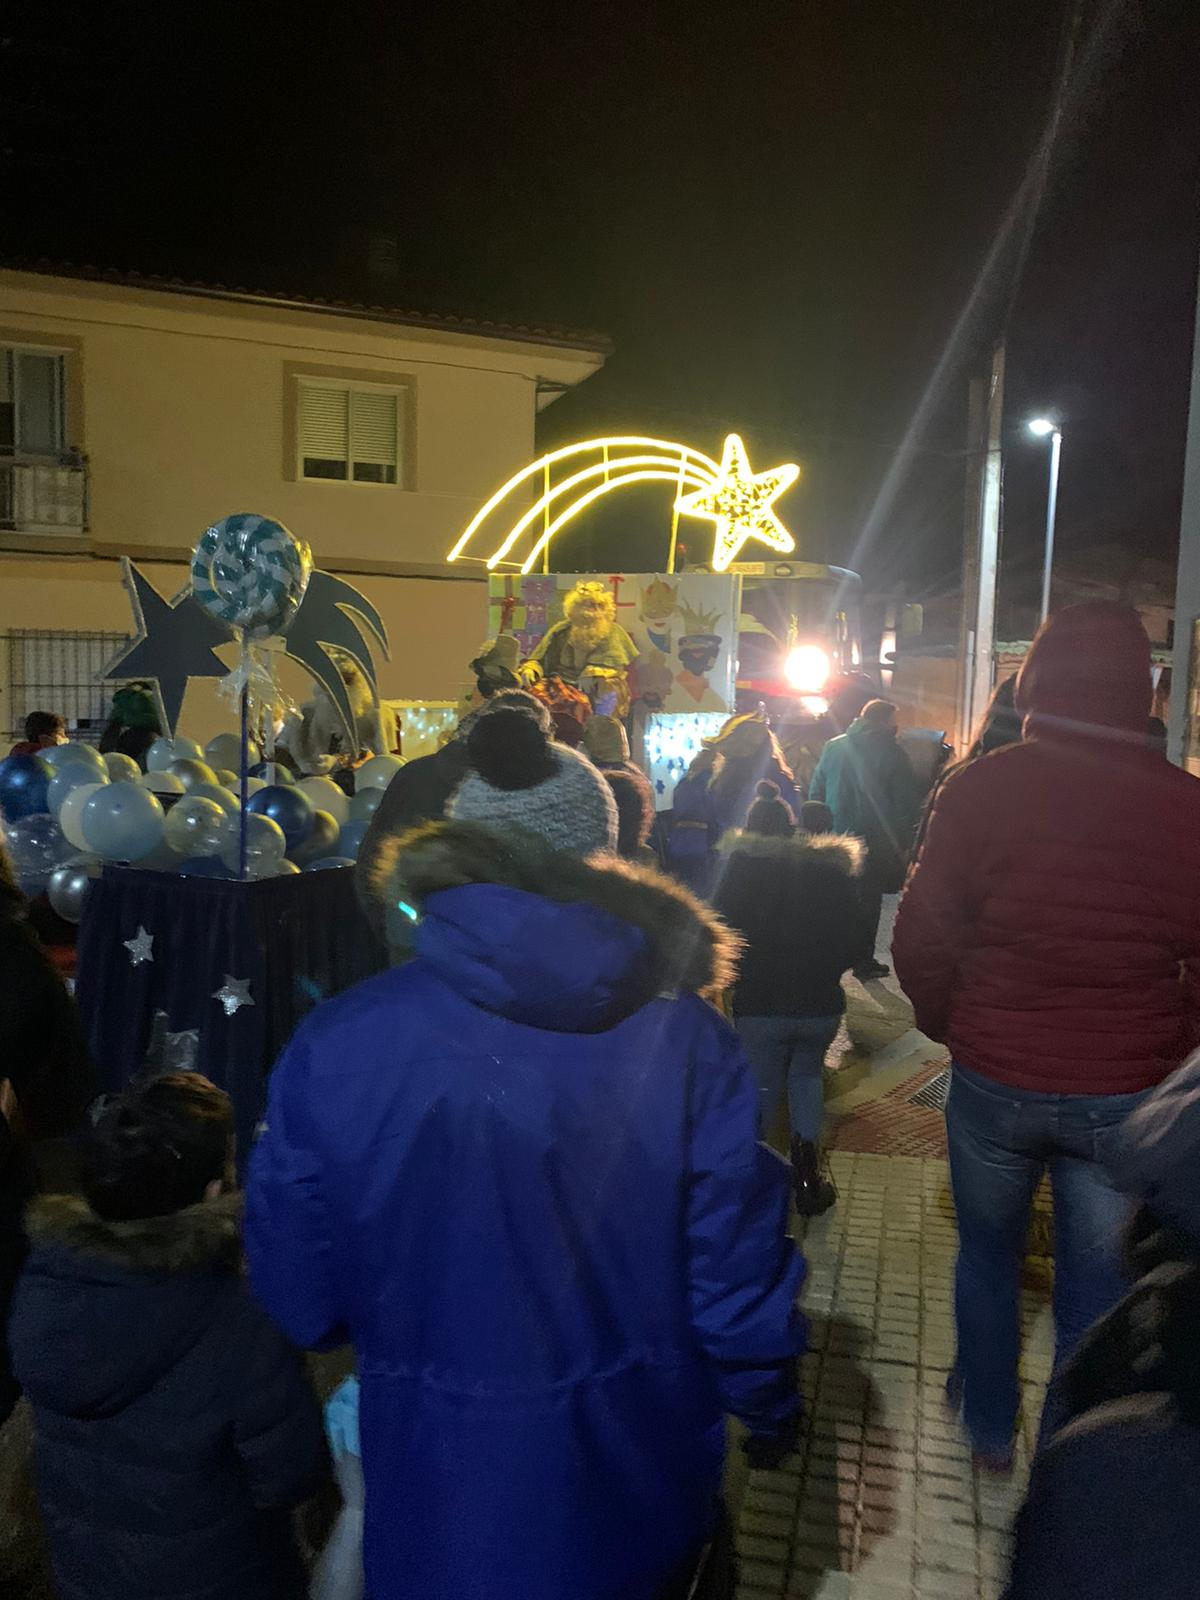 Foto 2 - Alegría tras la lluvia para recibir a los Reyes Magos en una animada Cabalgata en Villoria